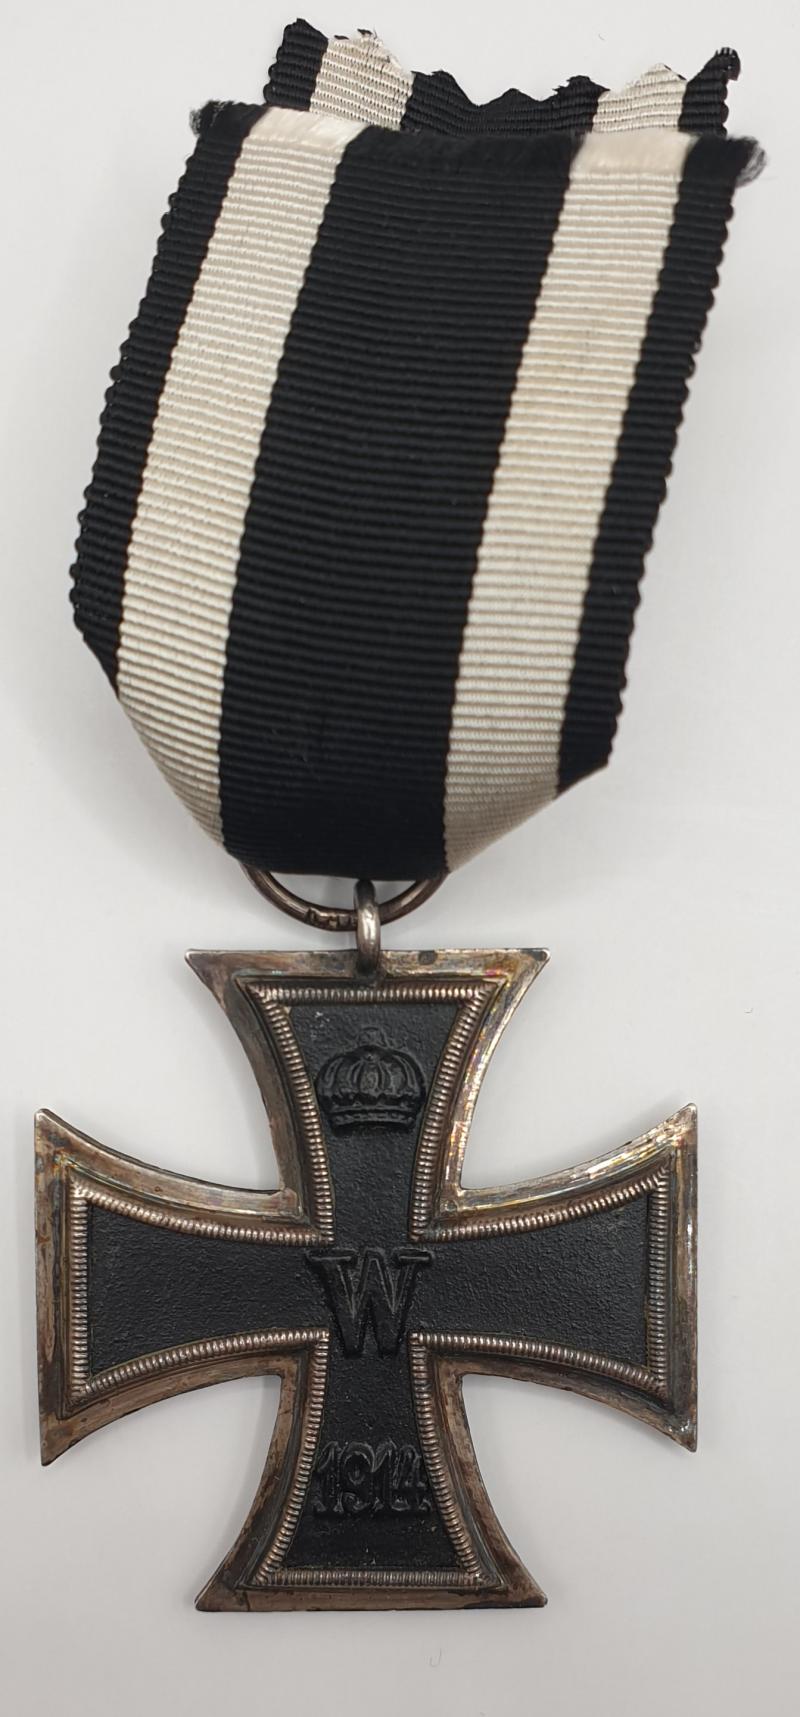 1914 Iron Cross Second Class by K.A.G